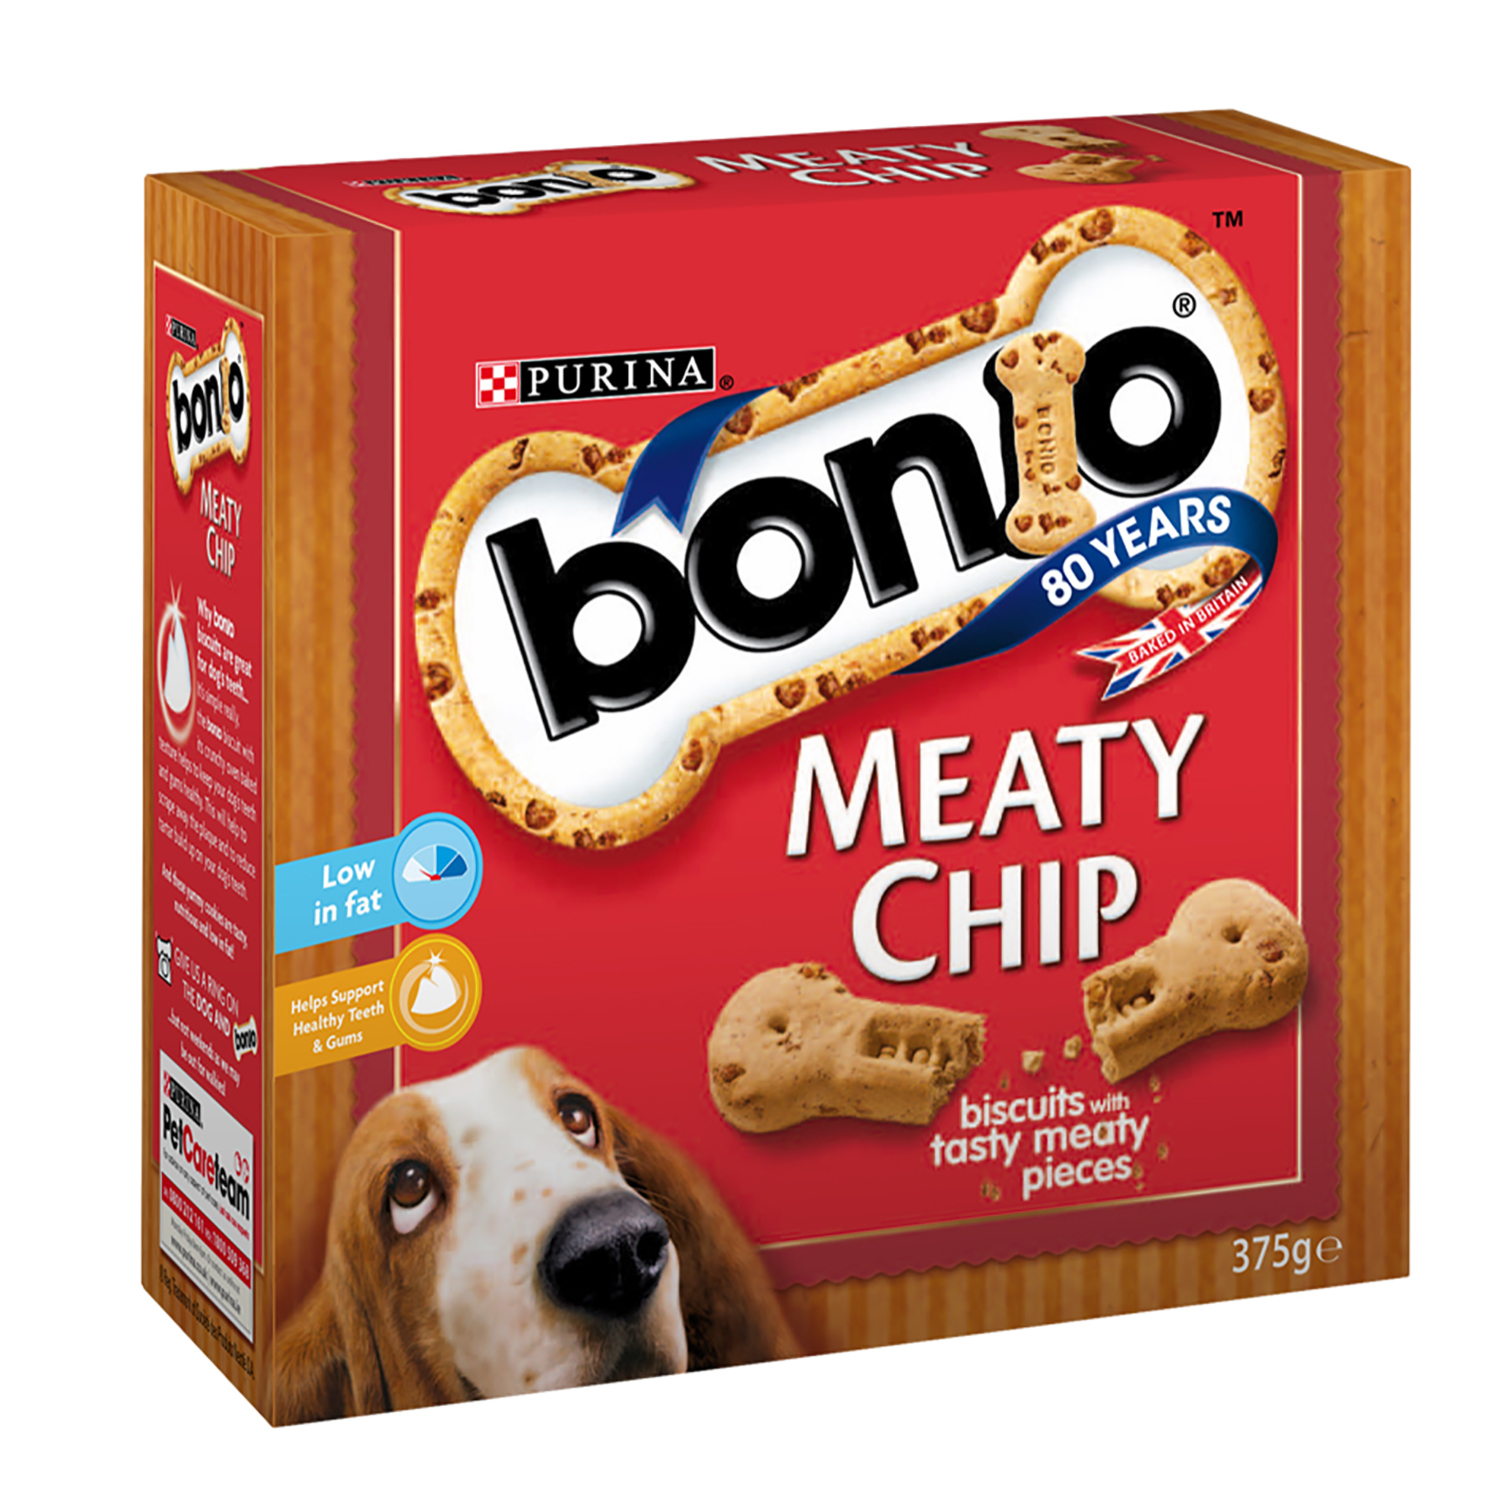 Purina Bonio Meaty Chip Dog Treats 375g Image